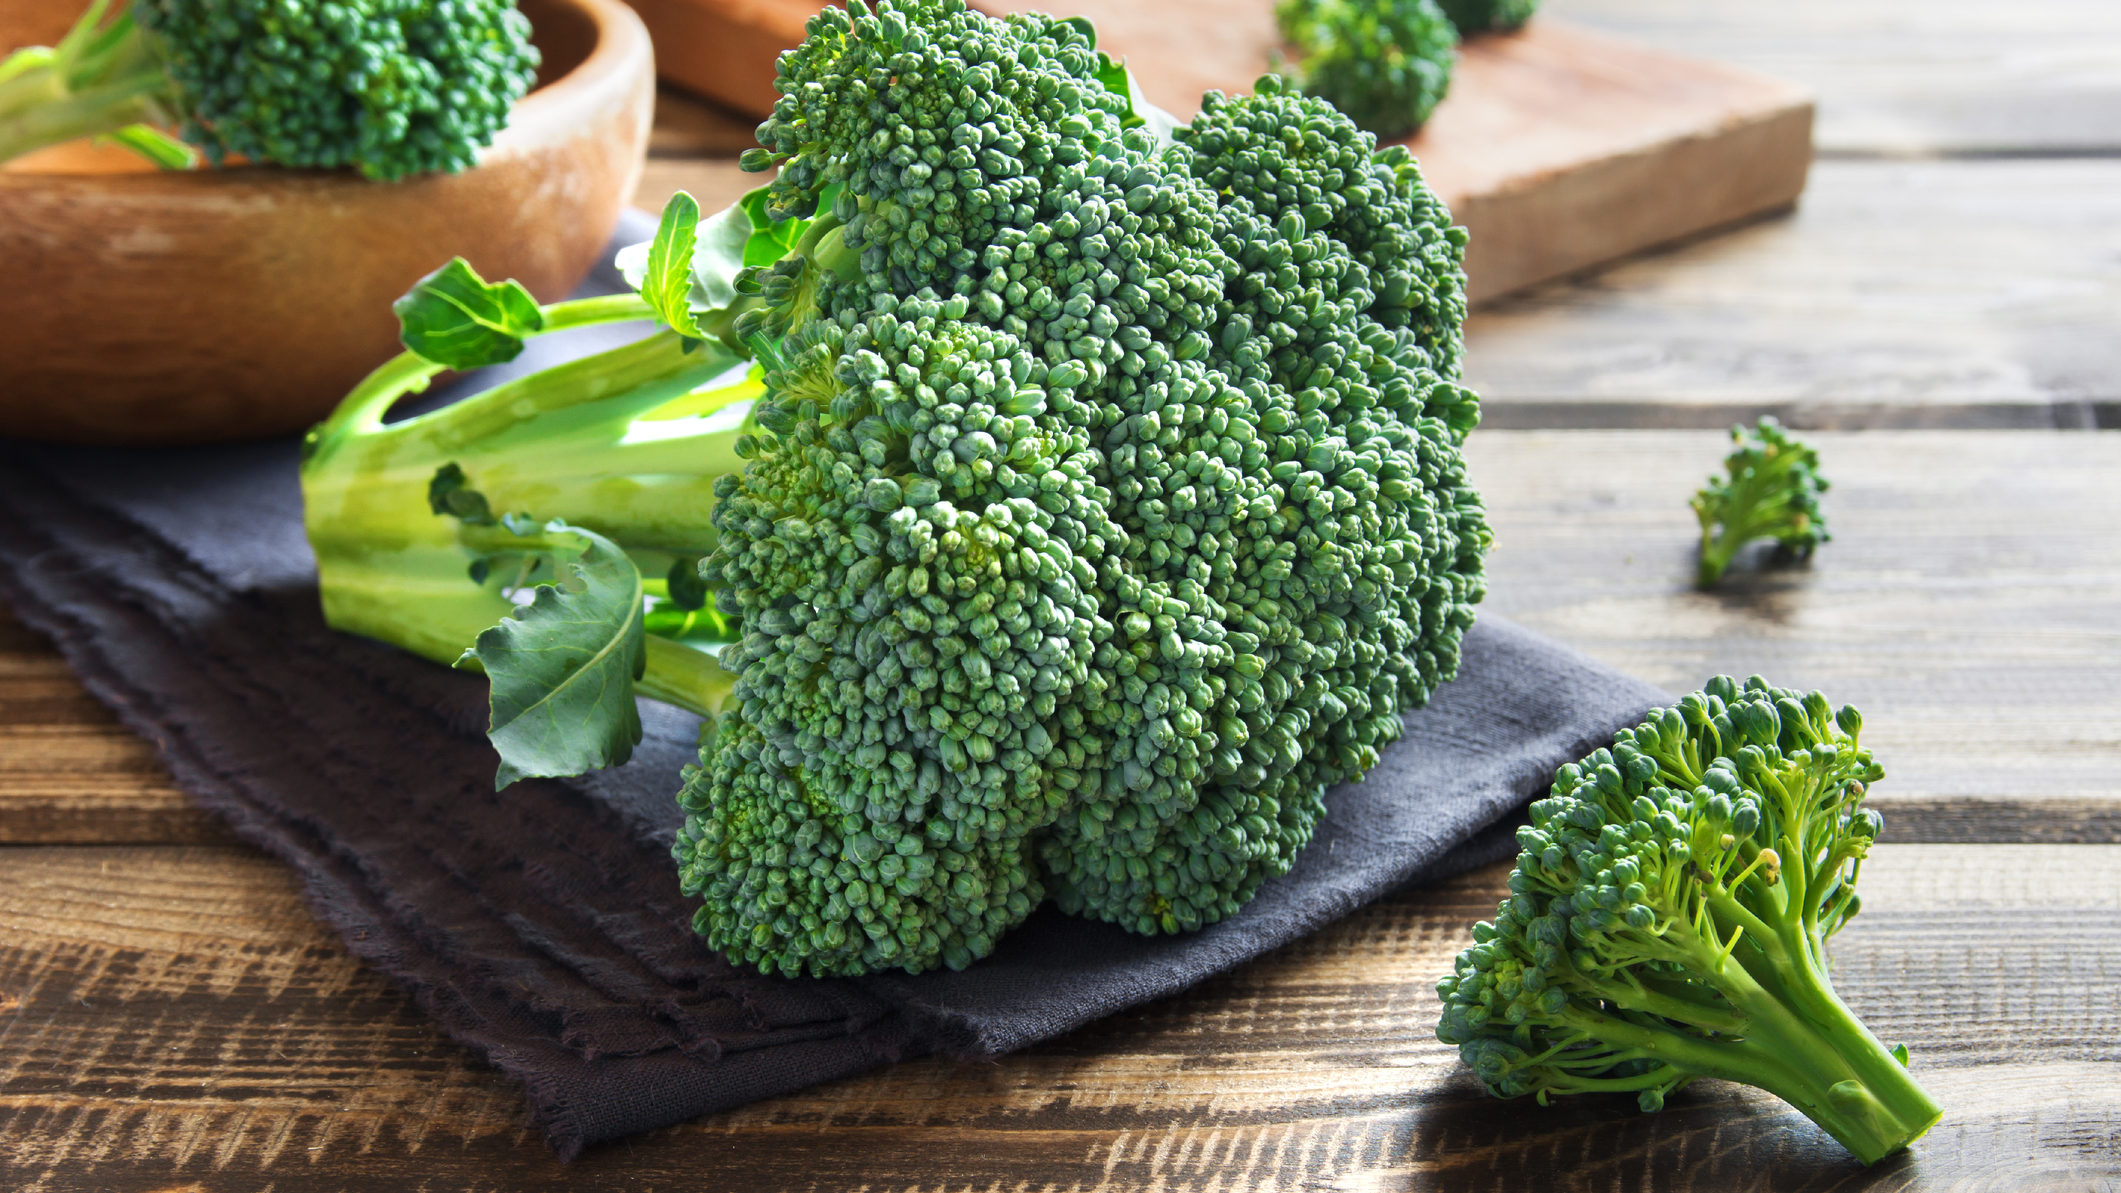 Segít a brokkoli fogyni. Adjon le 6 kilót mindössze 17 nap alatt! – ÉTREND